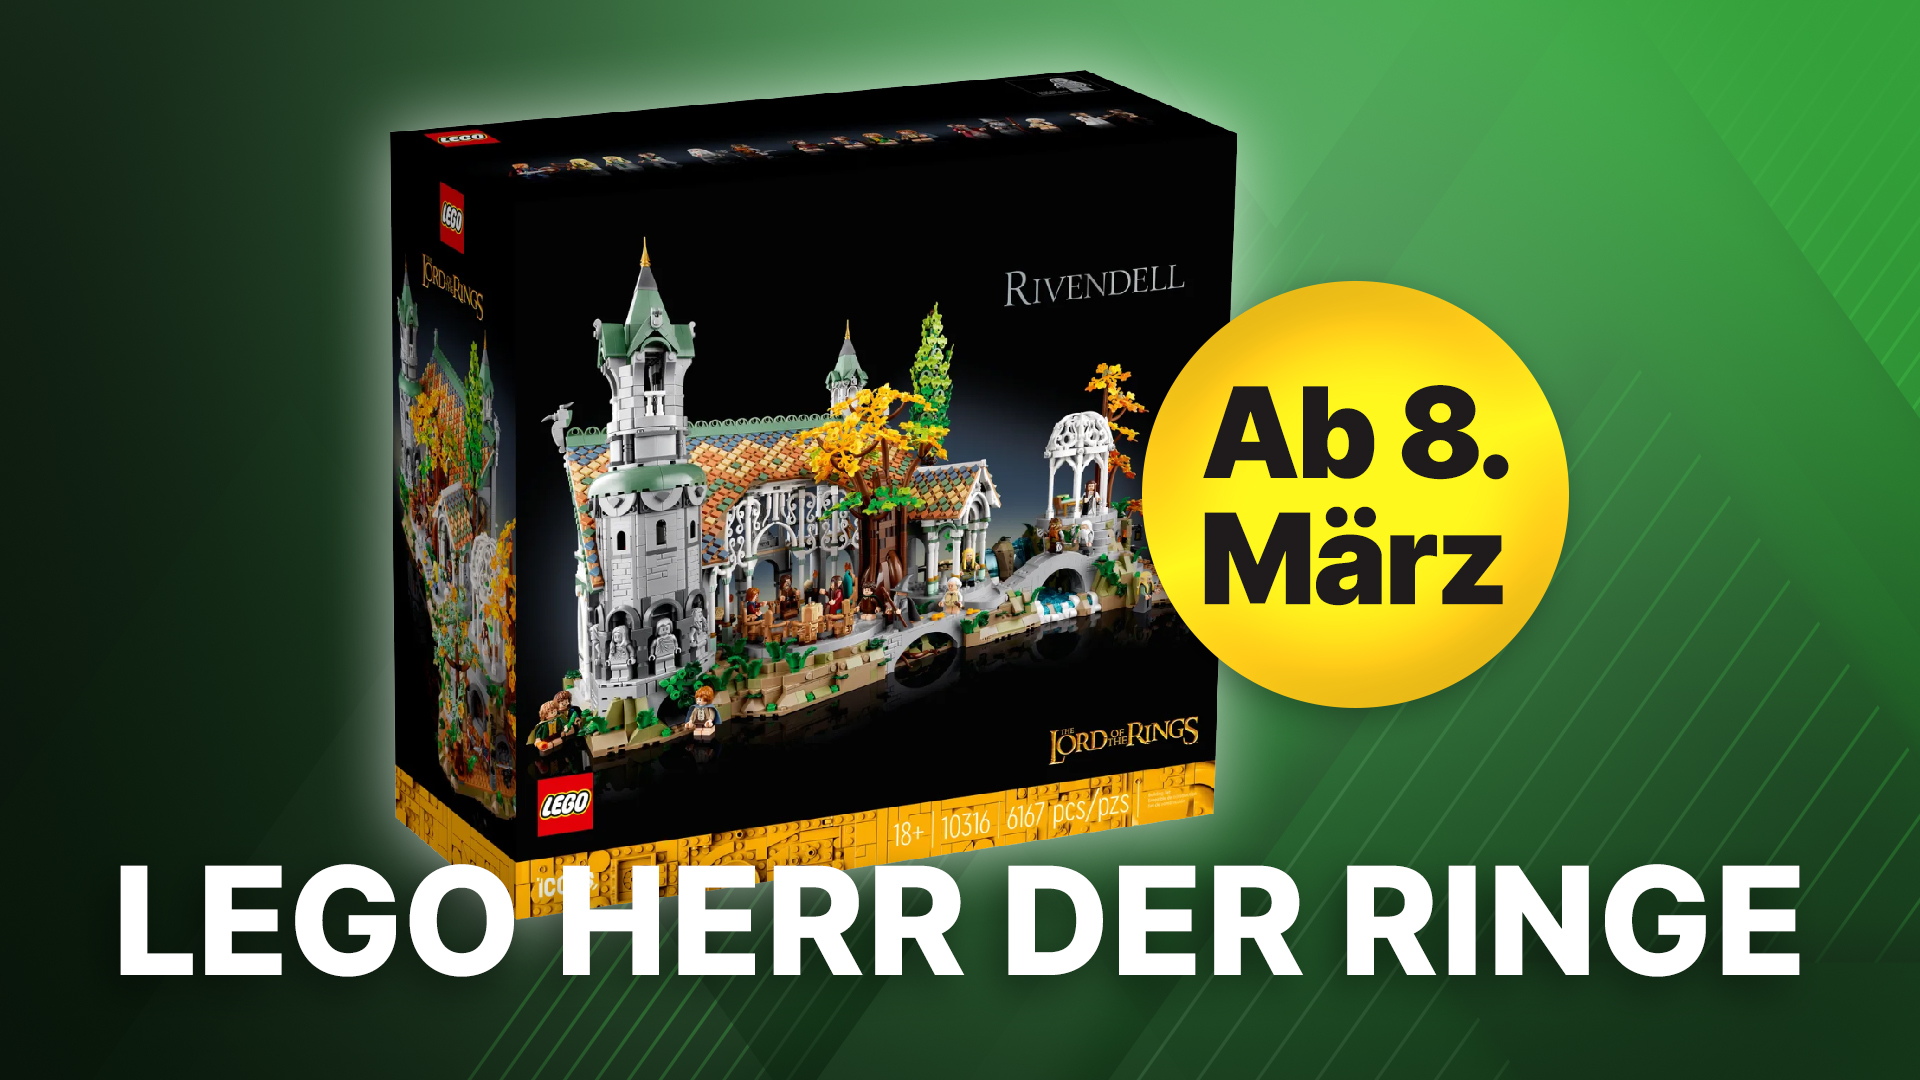 LEGO-Herr-der-Ringe-meldet-sich-mit-einem-riesigen-Bruchtal-Set-zur-ck